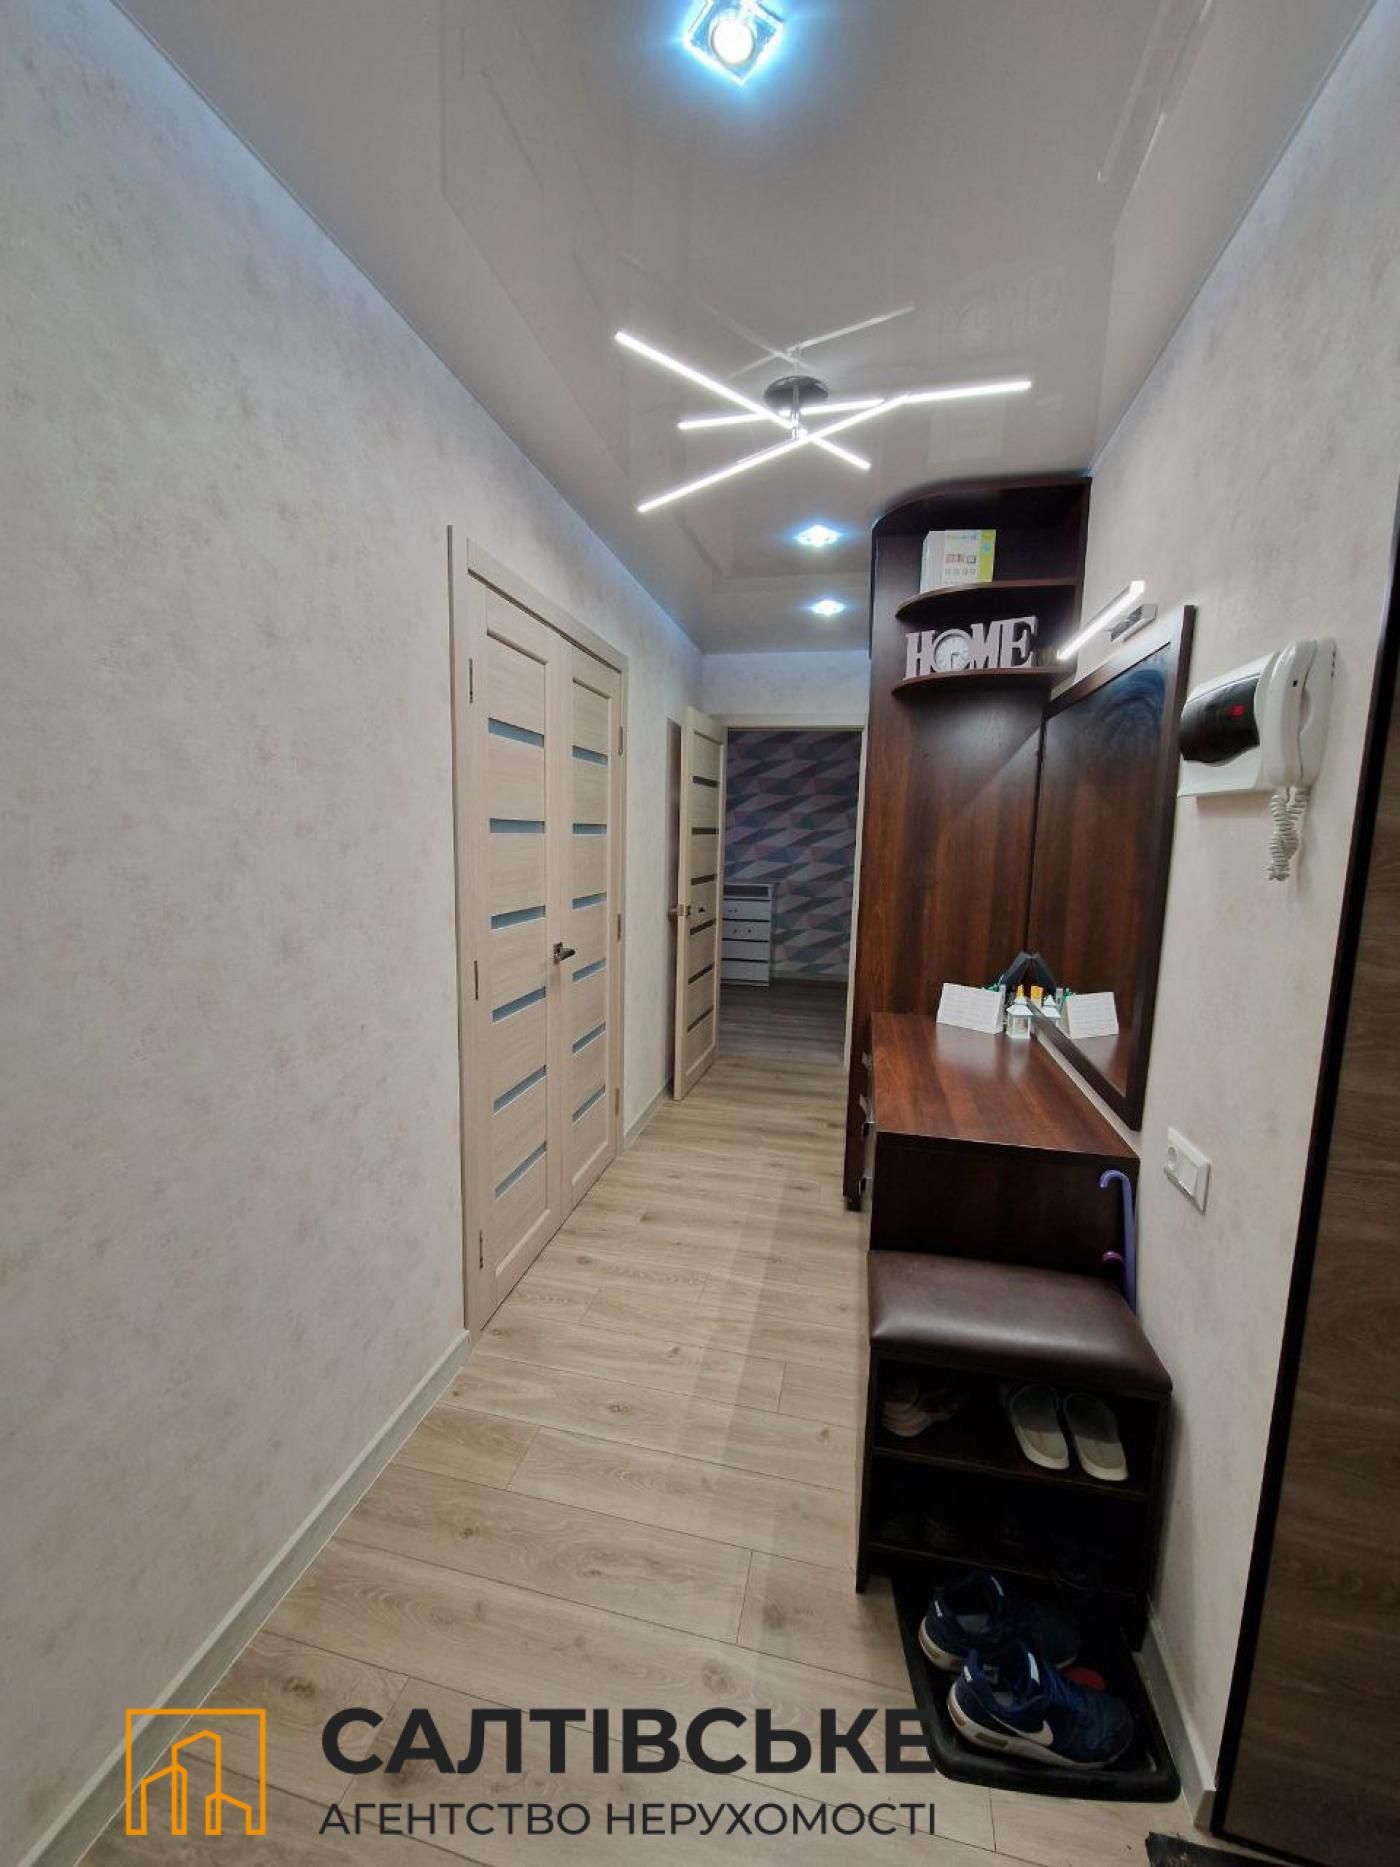 120-ИП Продам 2к квартиру 52м2 в новострое на Гагарина